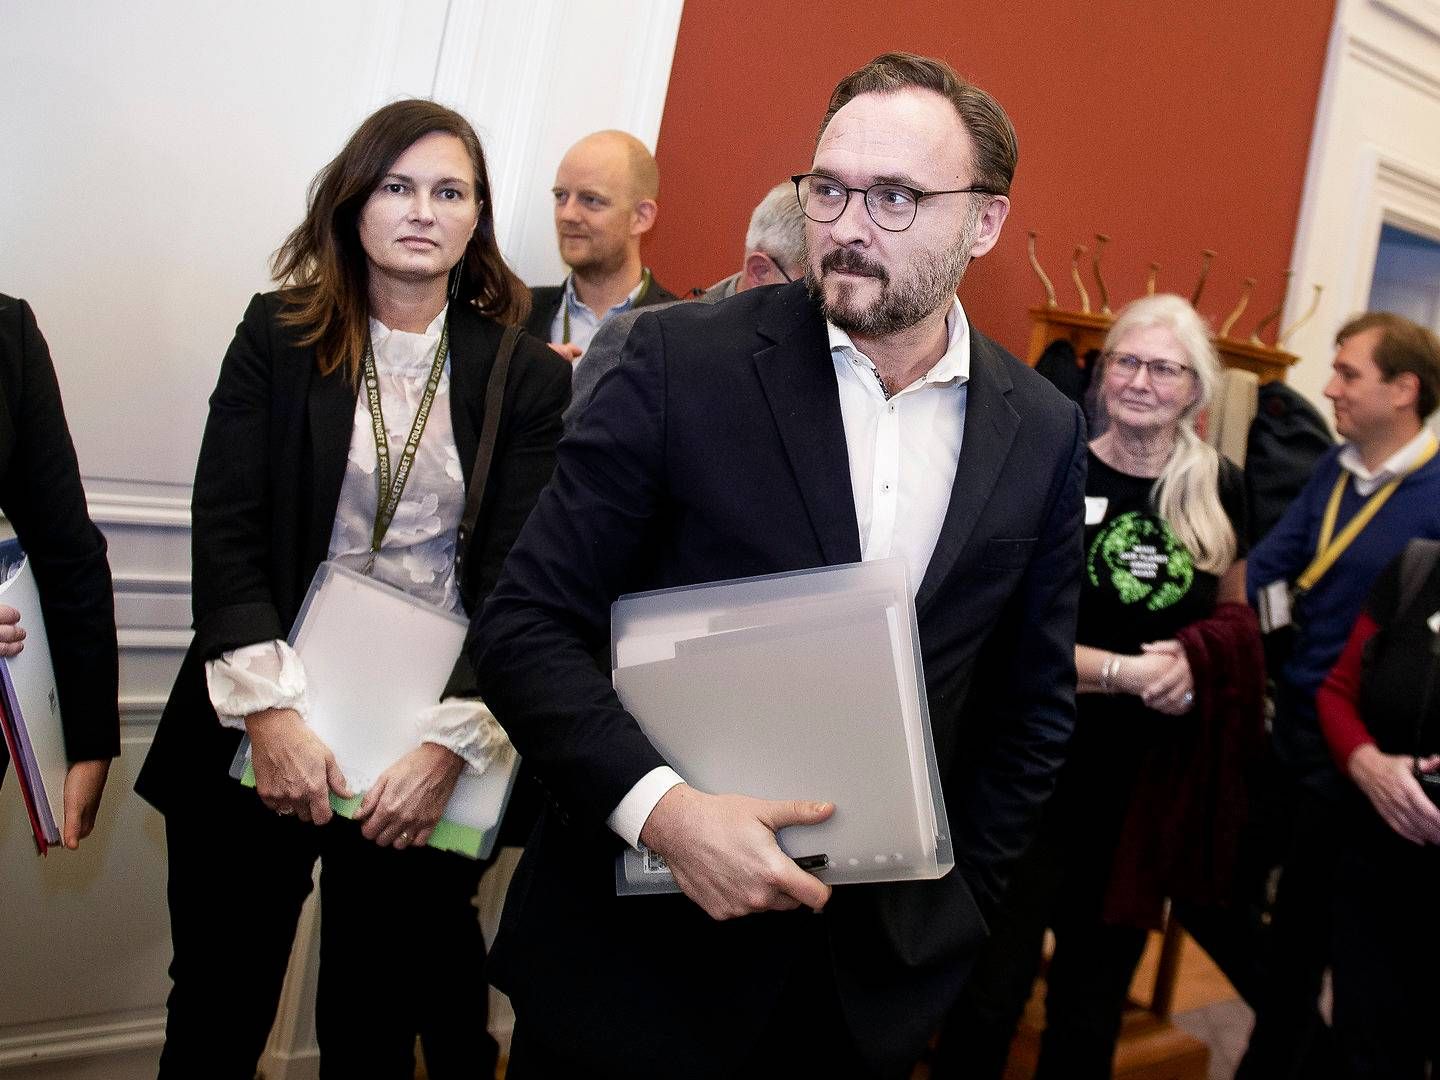 Klima-, energi- og forsyningsminister Dan Jørgensen (S) har i et svar opgjort, at navneændringen har kostet 141.546,20 kr. | Foto: Liselotte Sabroe / Ritzau Scanpix